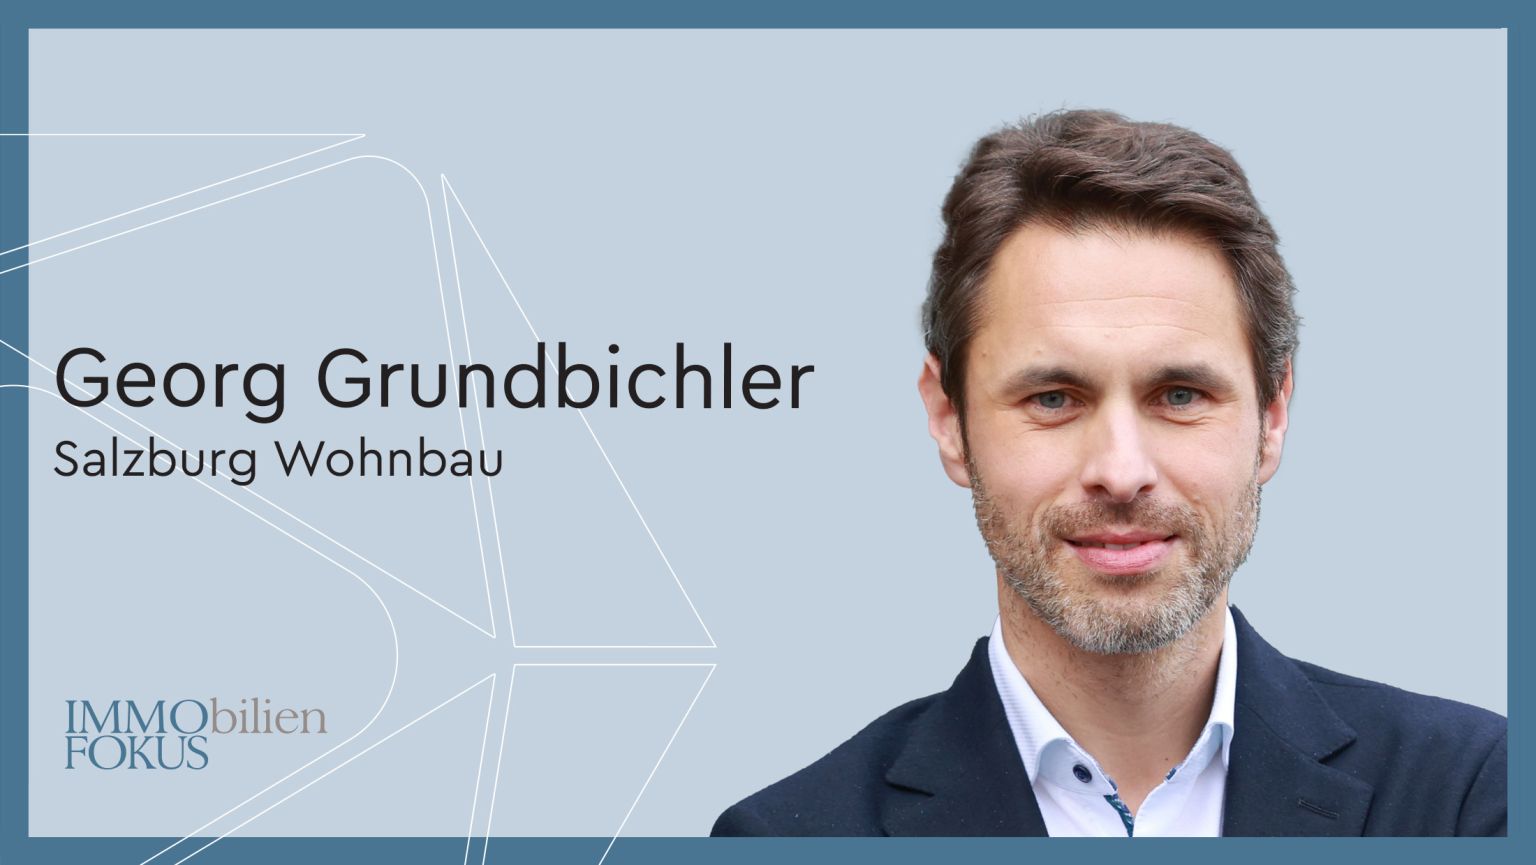 Georg Grundbichler zum Geschäftsführer der Salzburg Wohnbau bestellt